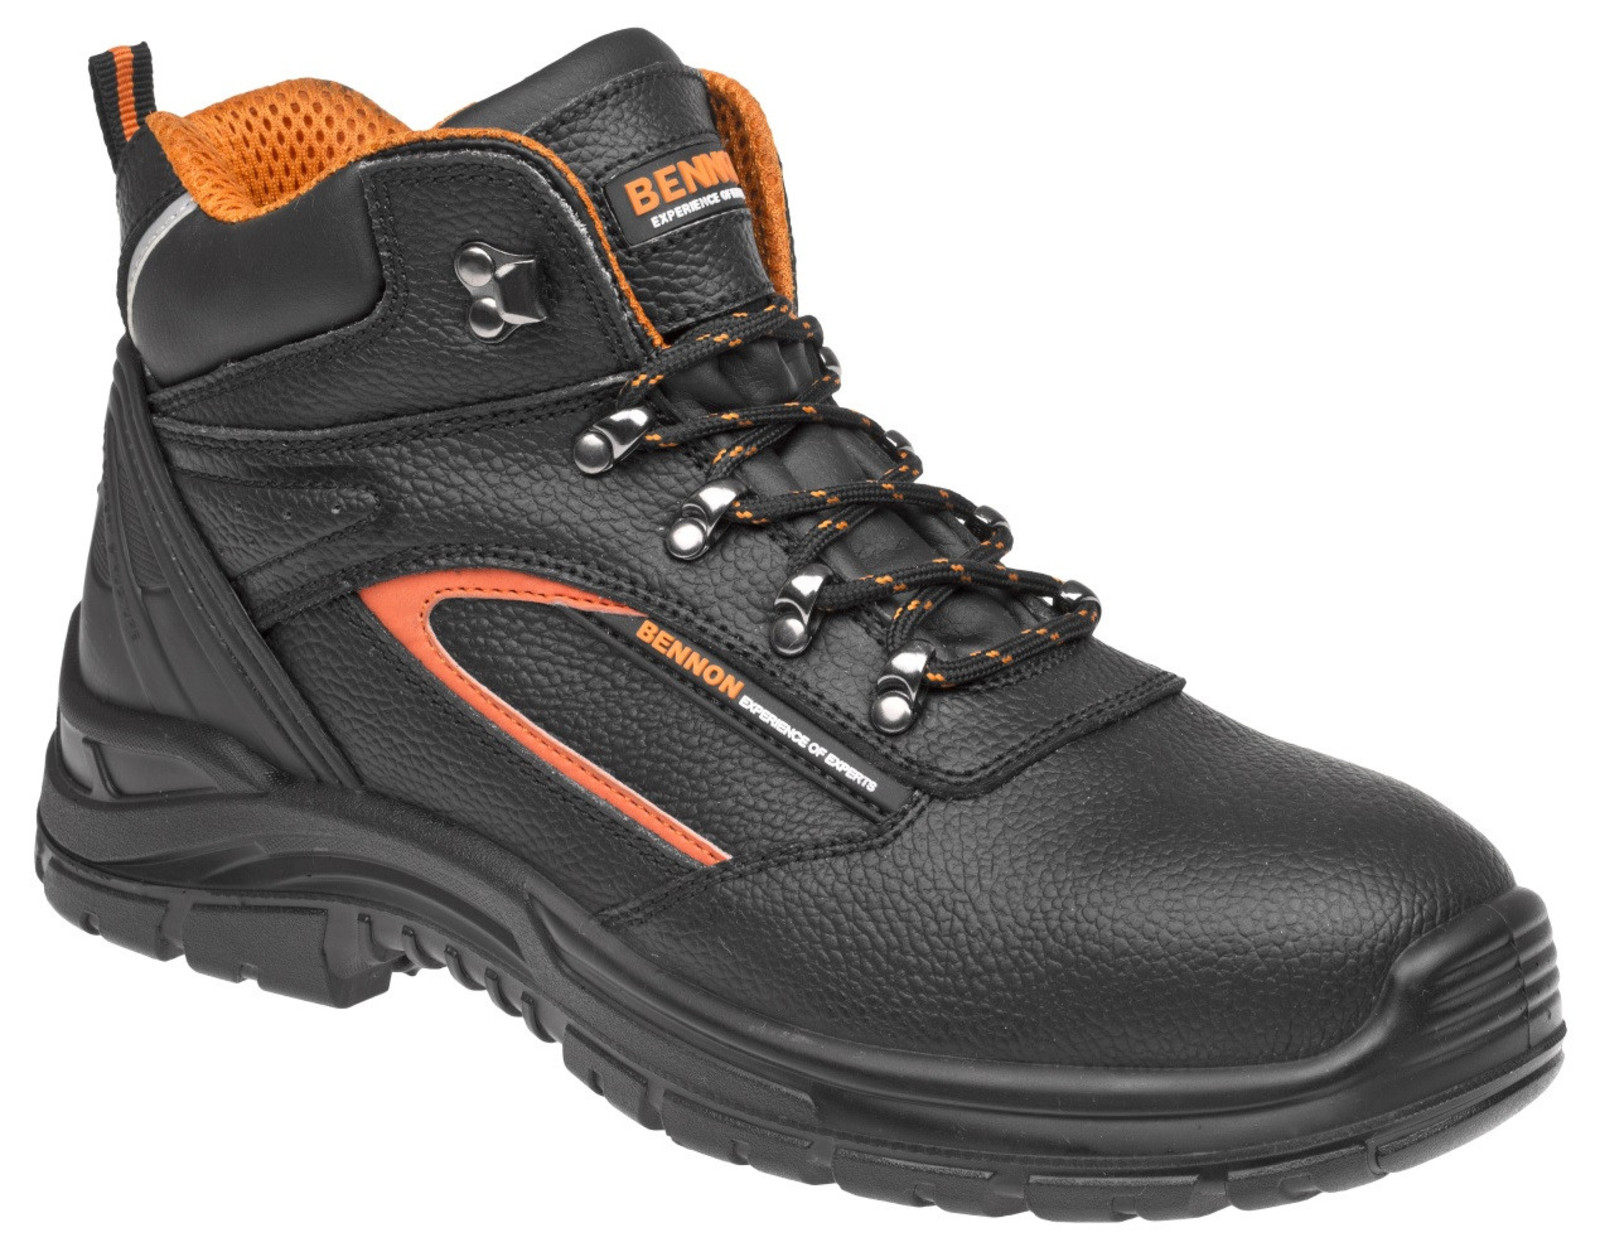 Pracovné topánky Bennon Fortis O2  - veľkosť: 48, farba: čierna